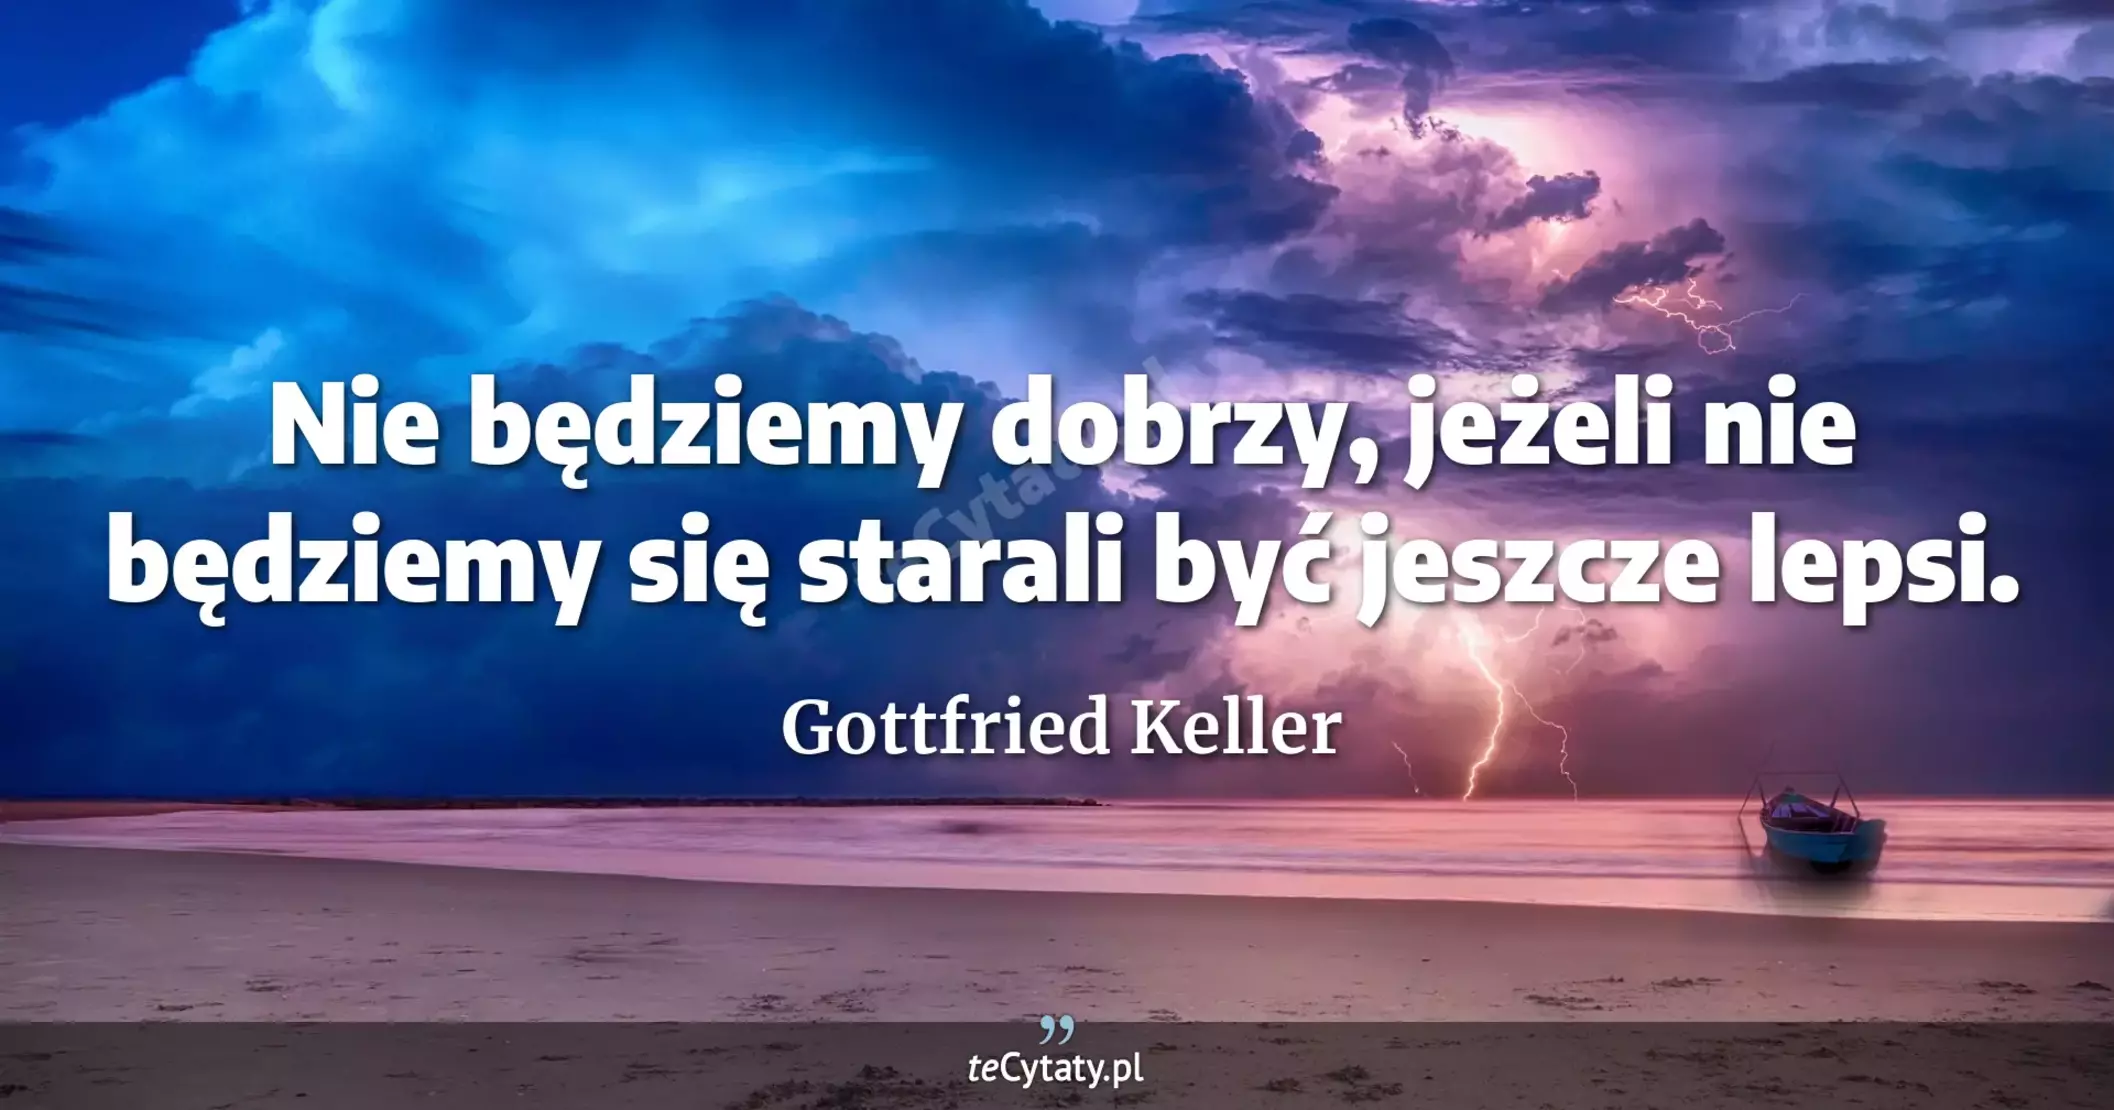 Nie będziemy dobrzy, jeżeli nie będziemy się starali być jeszcze lepsi. - Gottfried Keller